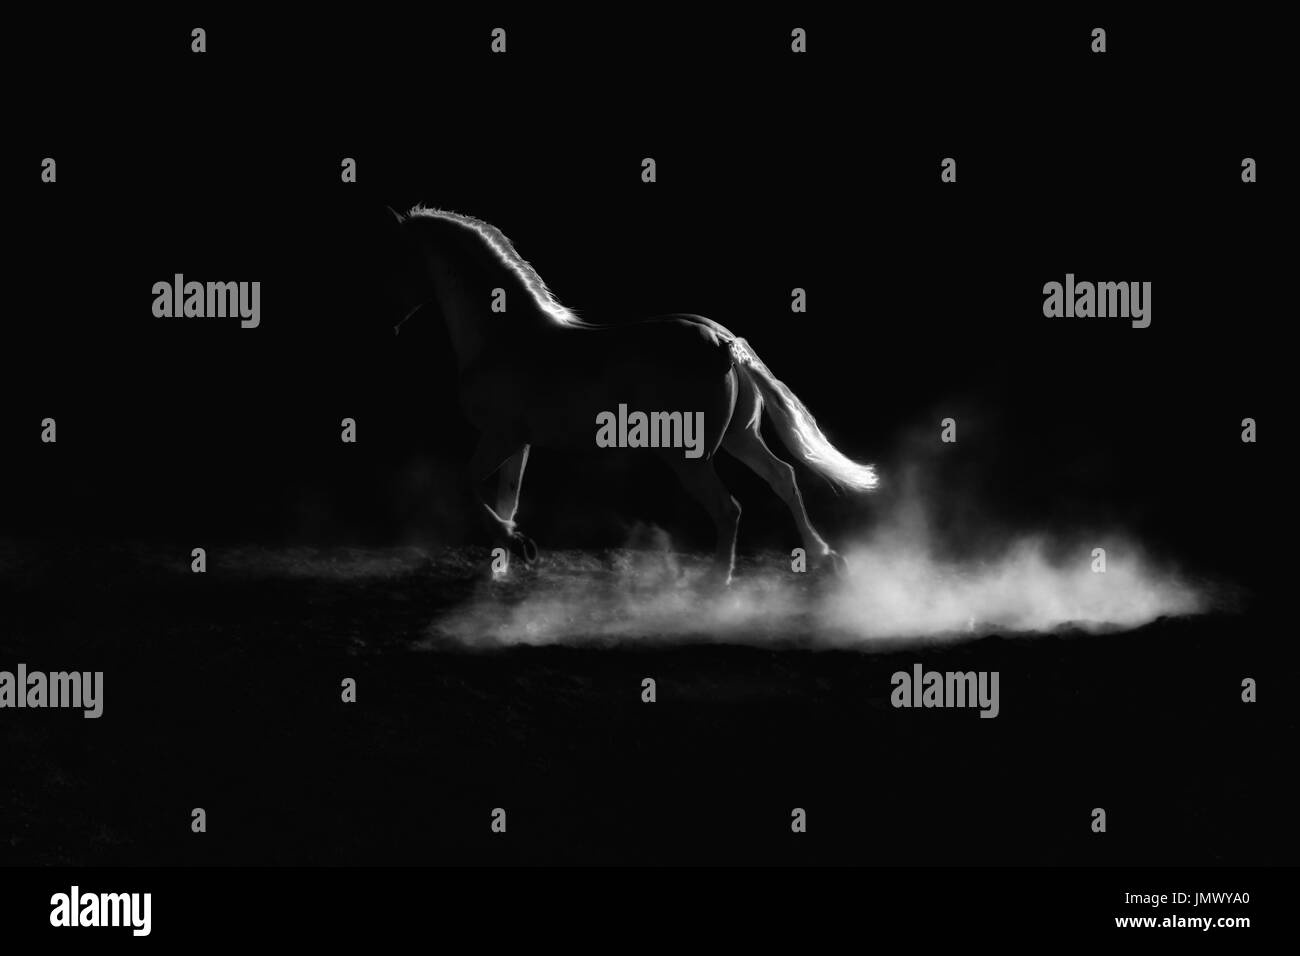 Hervorgehobener Umriss eines laufenden Pferdes. Unaufdringlich, schwarz / weiß Bild. Stockfoto